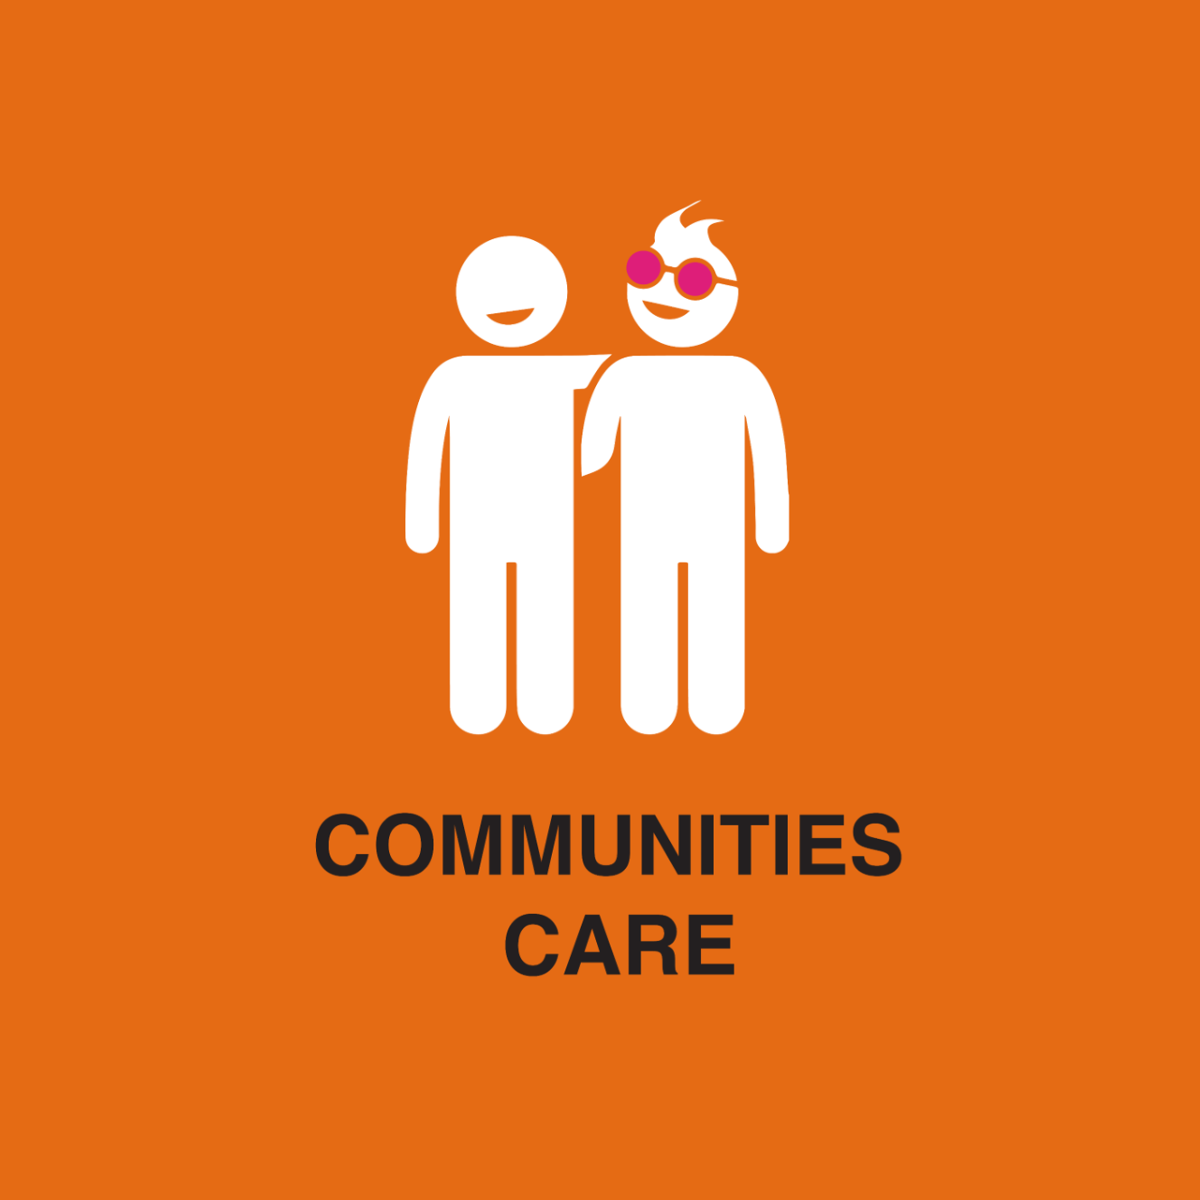  Communities care square logo